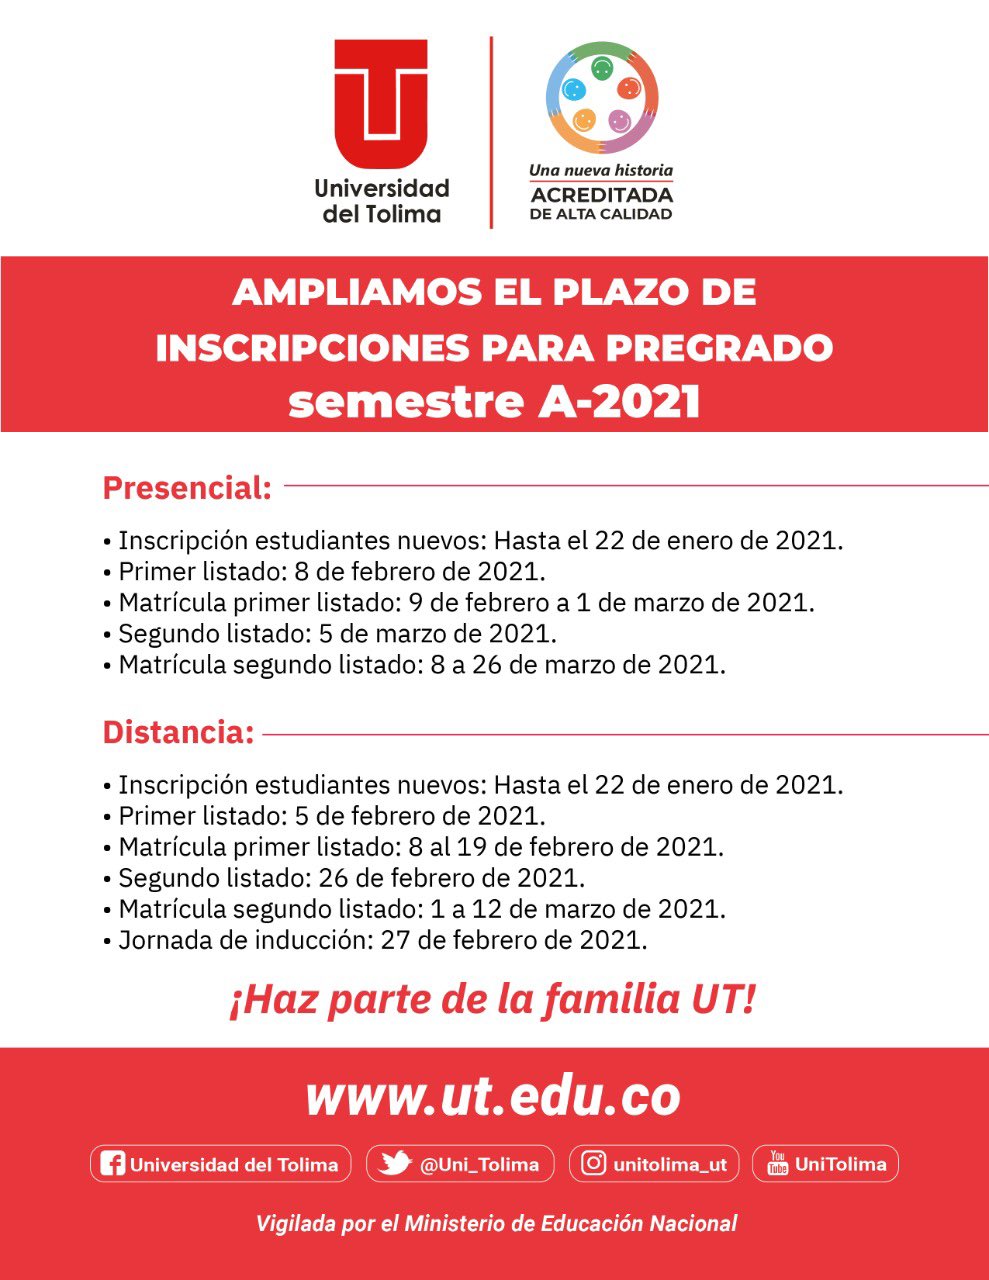 A quelarre primer semestre 2011. Número 20 - Universidad del Tolima